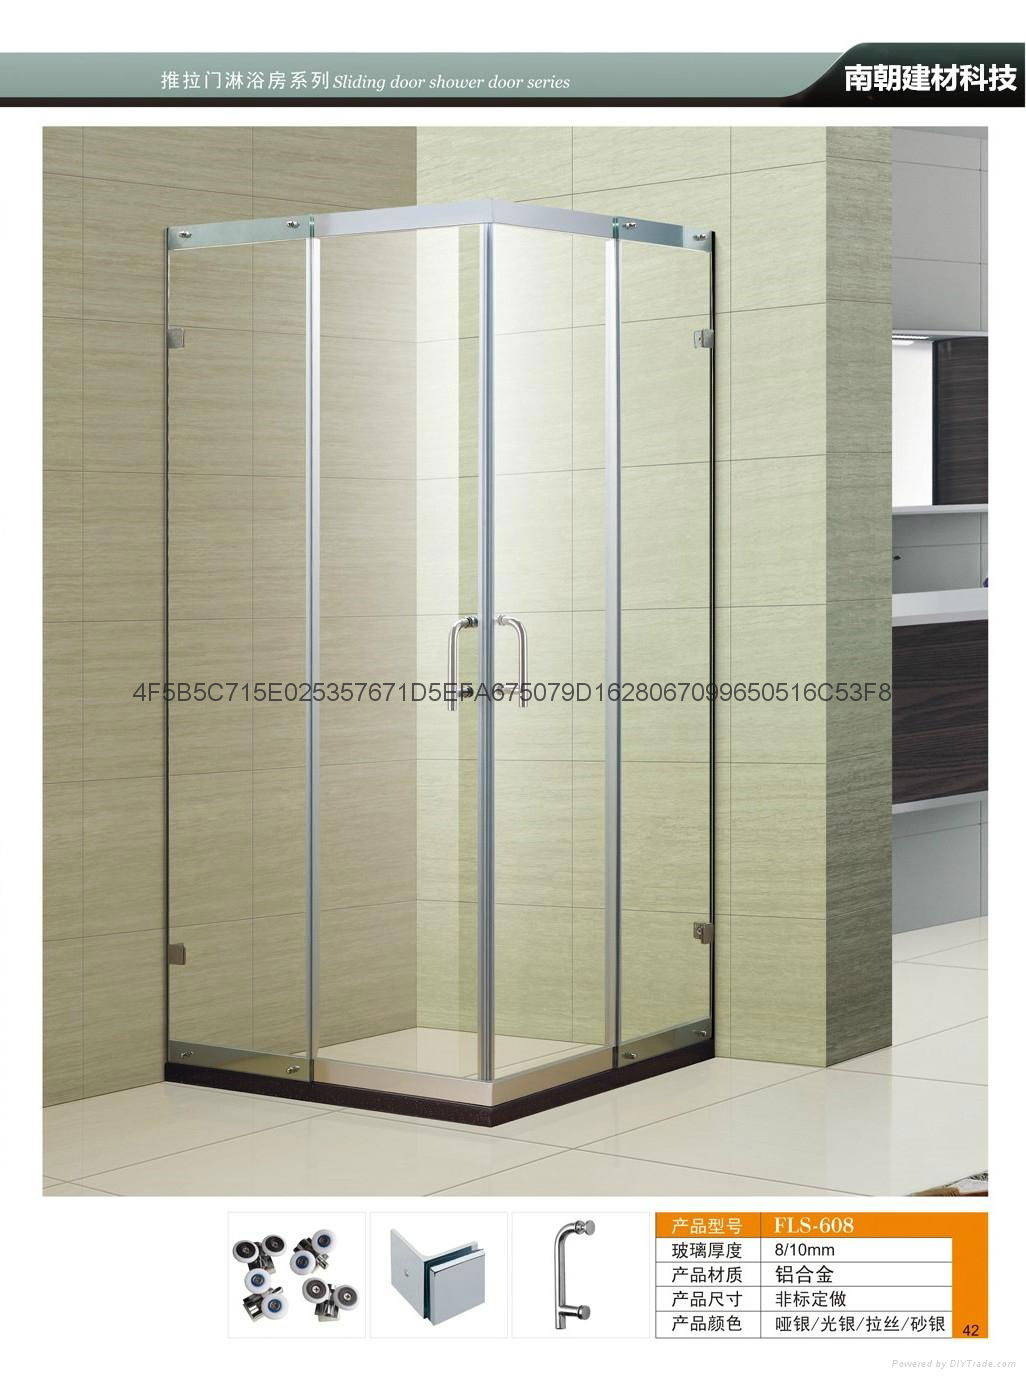 FS-608 淋浴房 整體浴室鋼化玻璃定製浴屏隔斷移門沐浴房簡易淋浴房 2